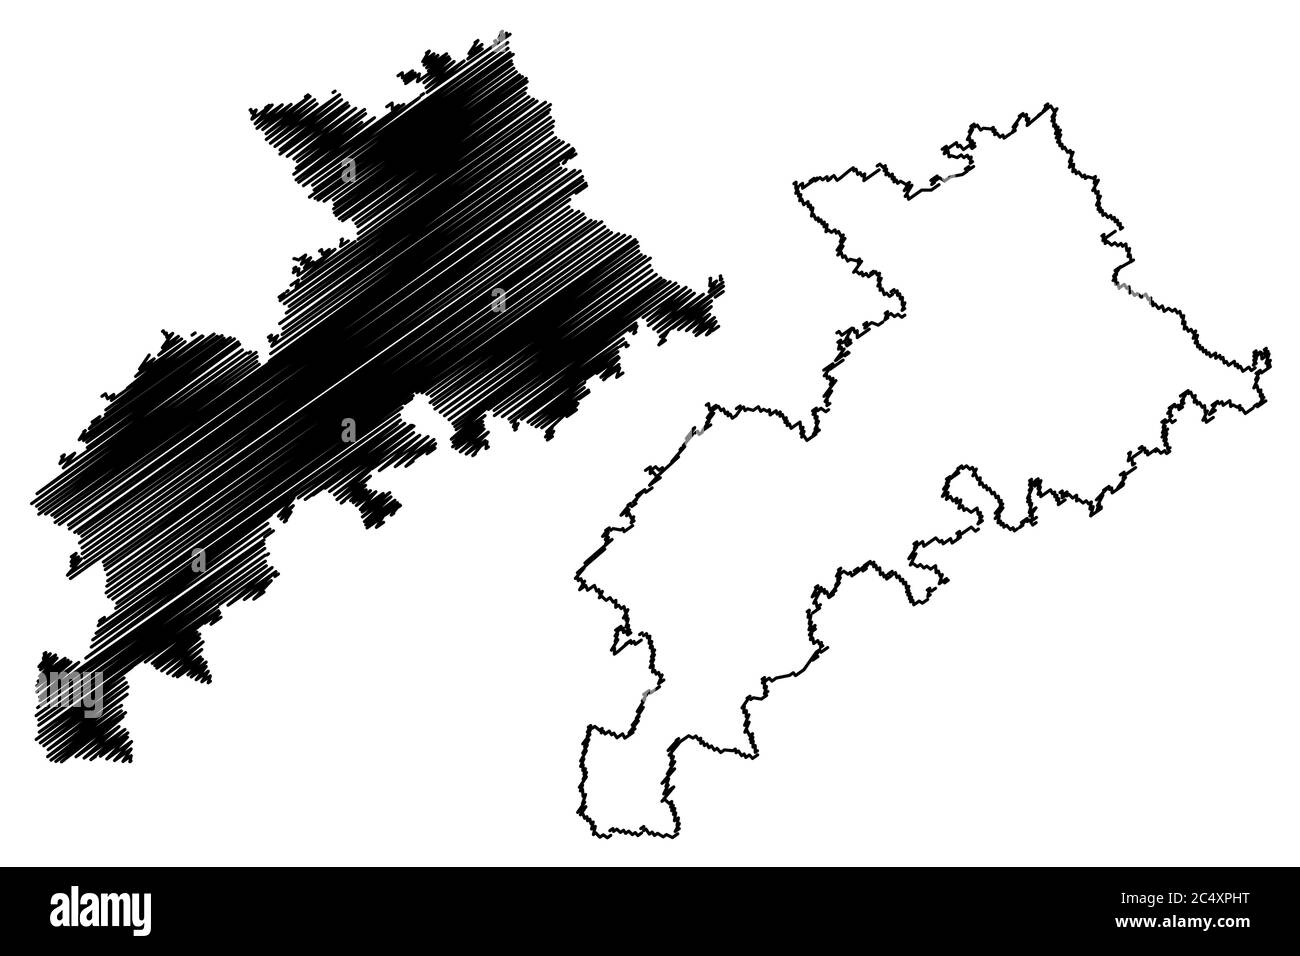 Departamento Haute-Garonne (Frankreich, Frankreich, Frankreich, Okzitanien oder Okzitanien) Karte Vektorgrafik, Skizze Nauta Garona Karte Stock Vektor